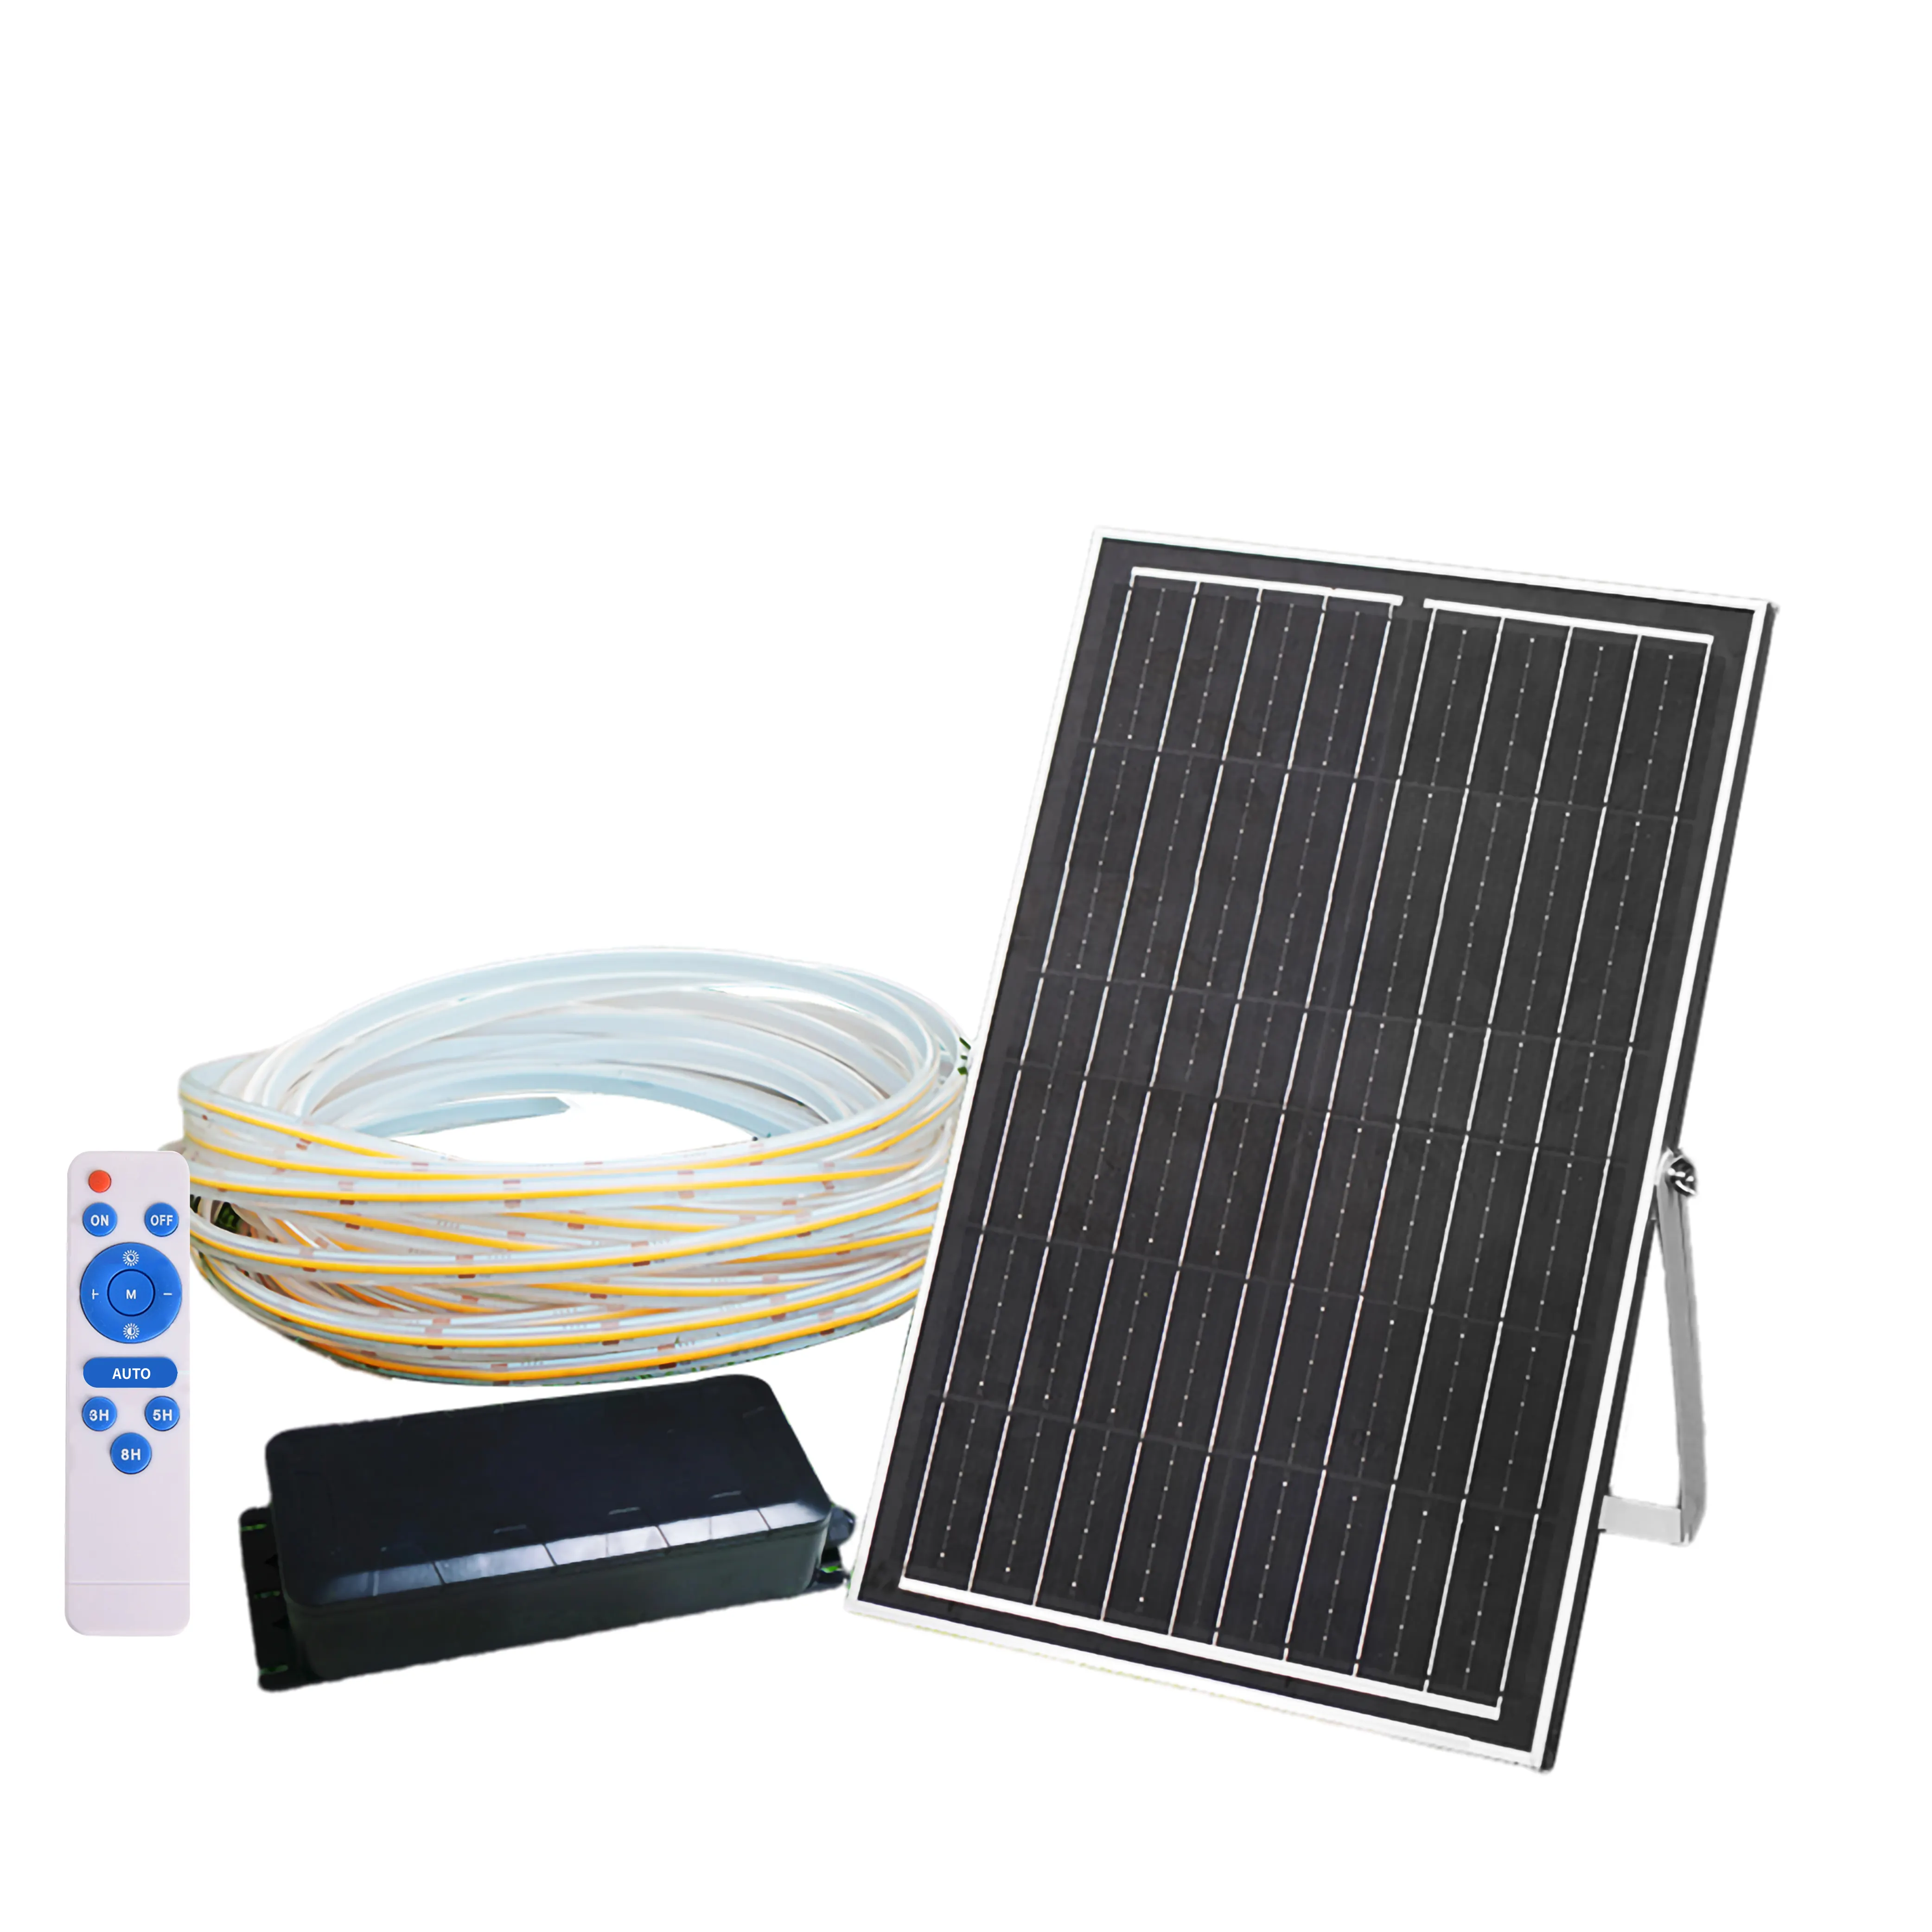 Solarstrom-LED-Streifenlicht 36 V Ip65 Cob-LED-Streifen mit Solarpanel-Strom flexibel weich für Indoor-Outdoor-Schwimmbad